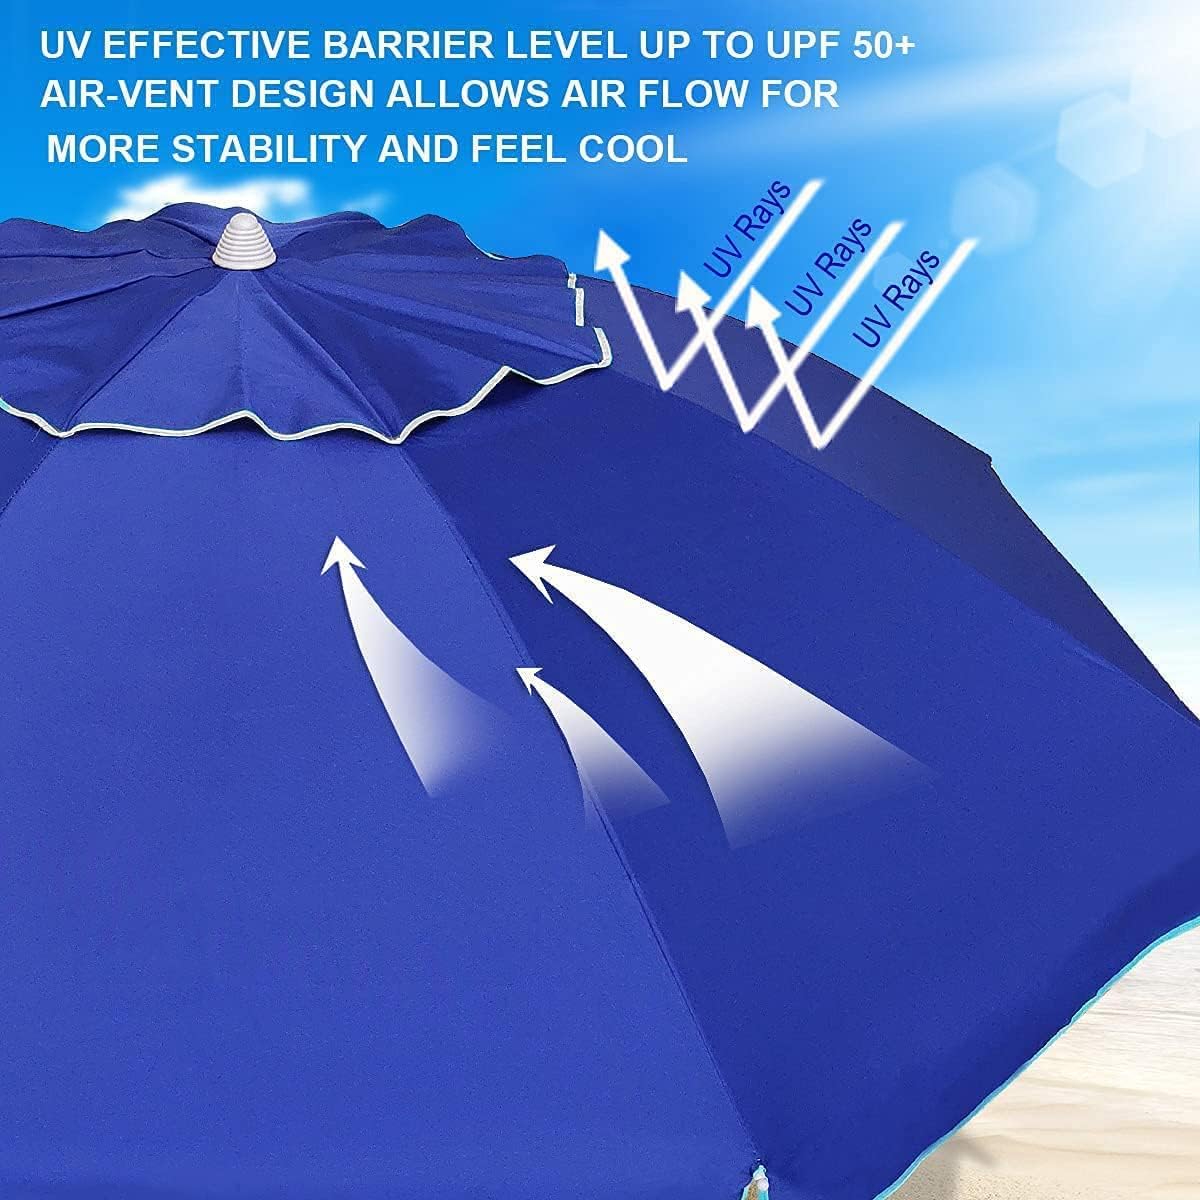 AMMSUN 7ft Heavy Duty High Wind Beach Umbrella With Sand Anchor